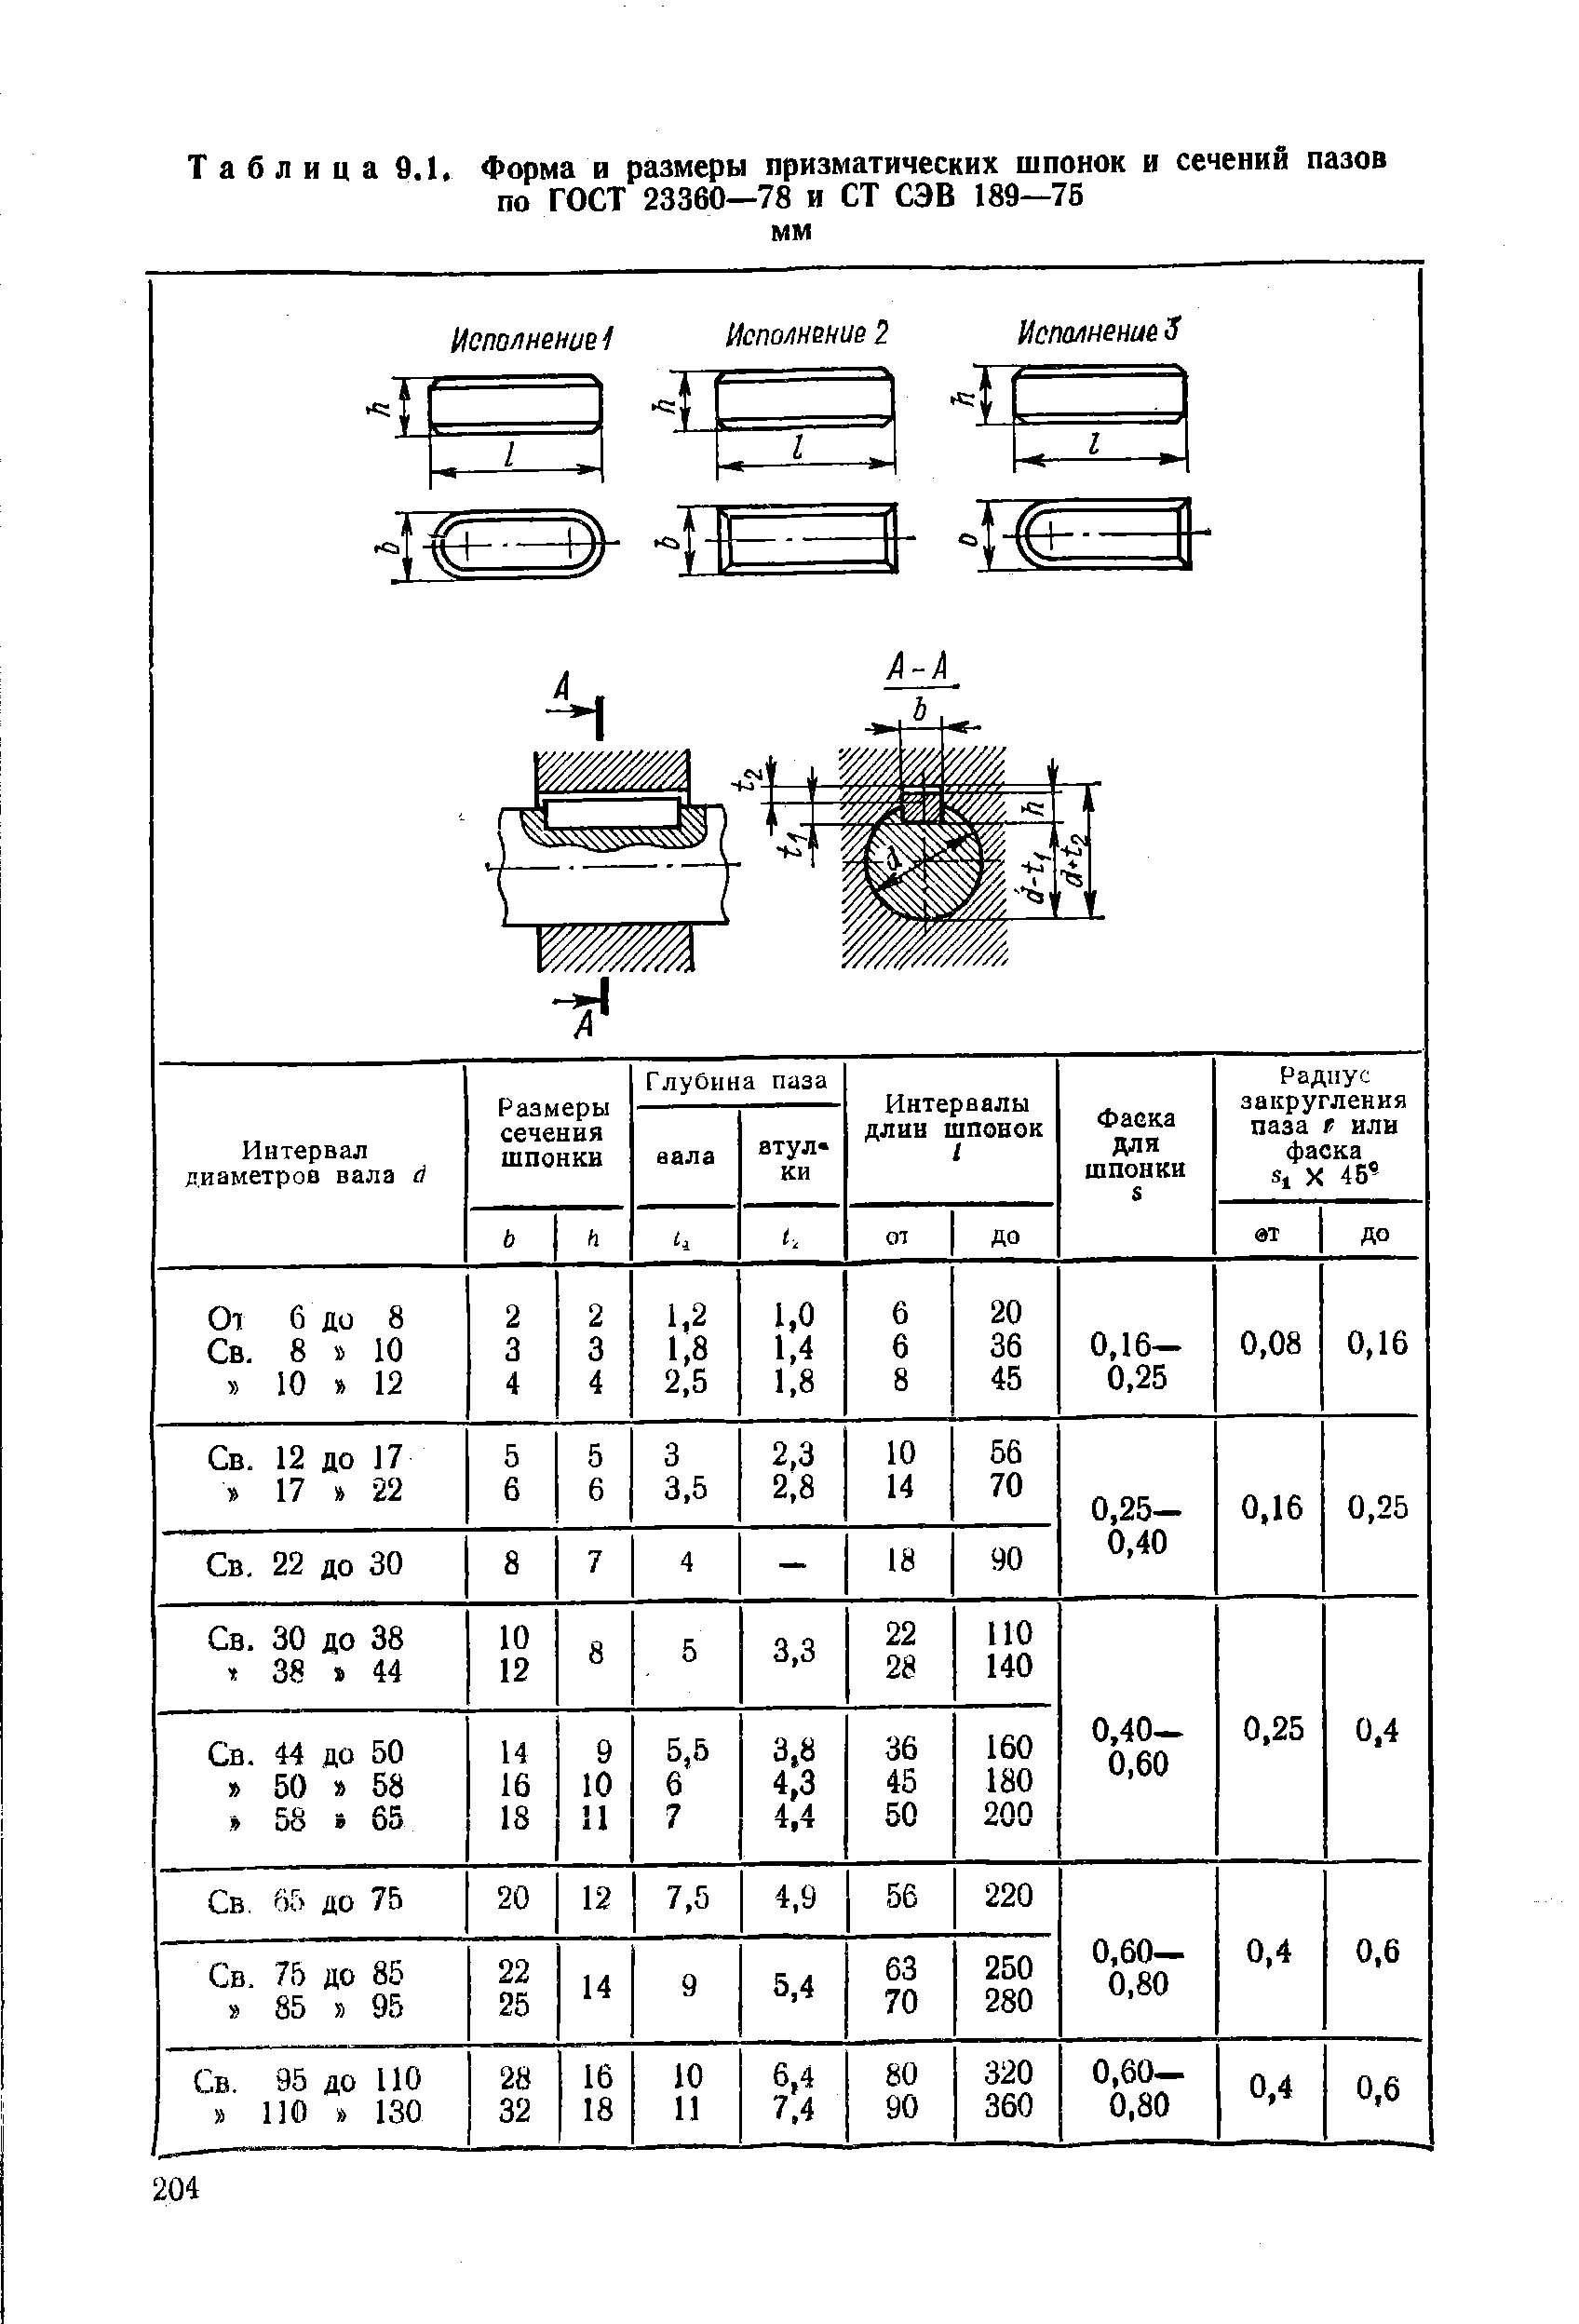 Таблица 9.1. Форма и размеры призматических шпонок и сечений пазов по ГОСТ 23360—78 и СТ СЭВ 189—76 мм
